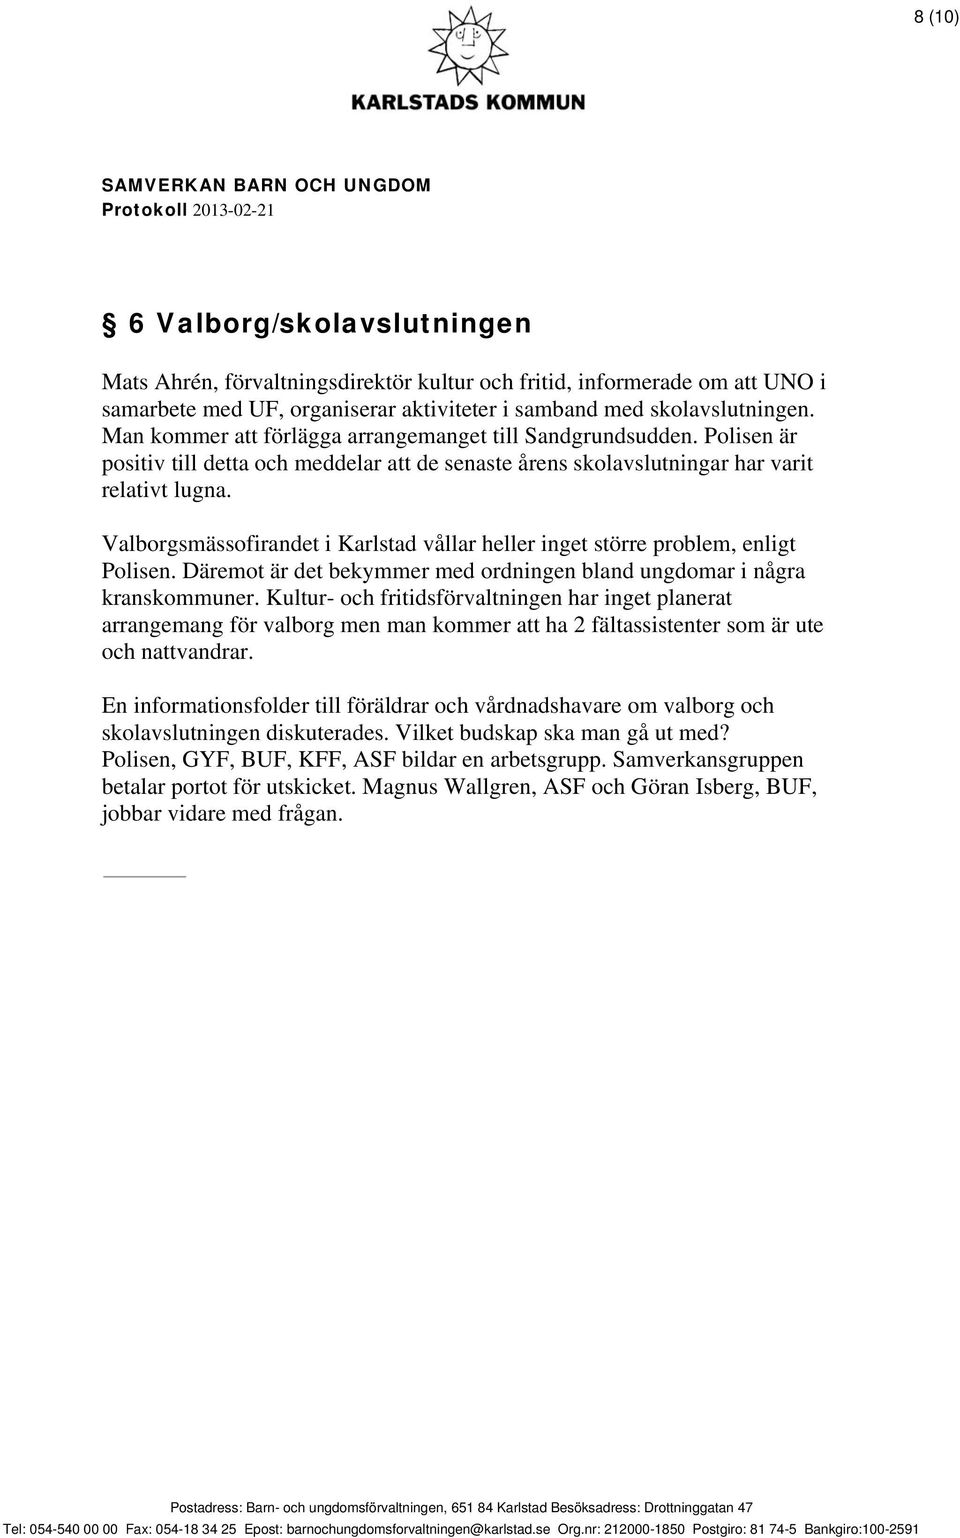 Valborgsmässofirandet i Karlstad vållar heller inget större problem, enligt Polisen. Däremot är det bekymmer med ordningen bland ungdomar i några kranskommuner.